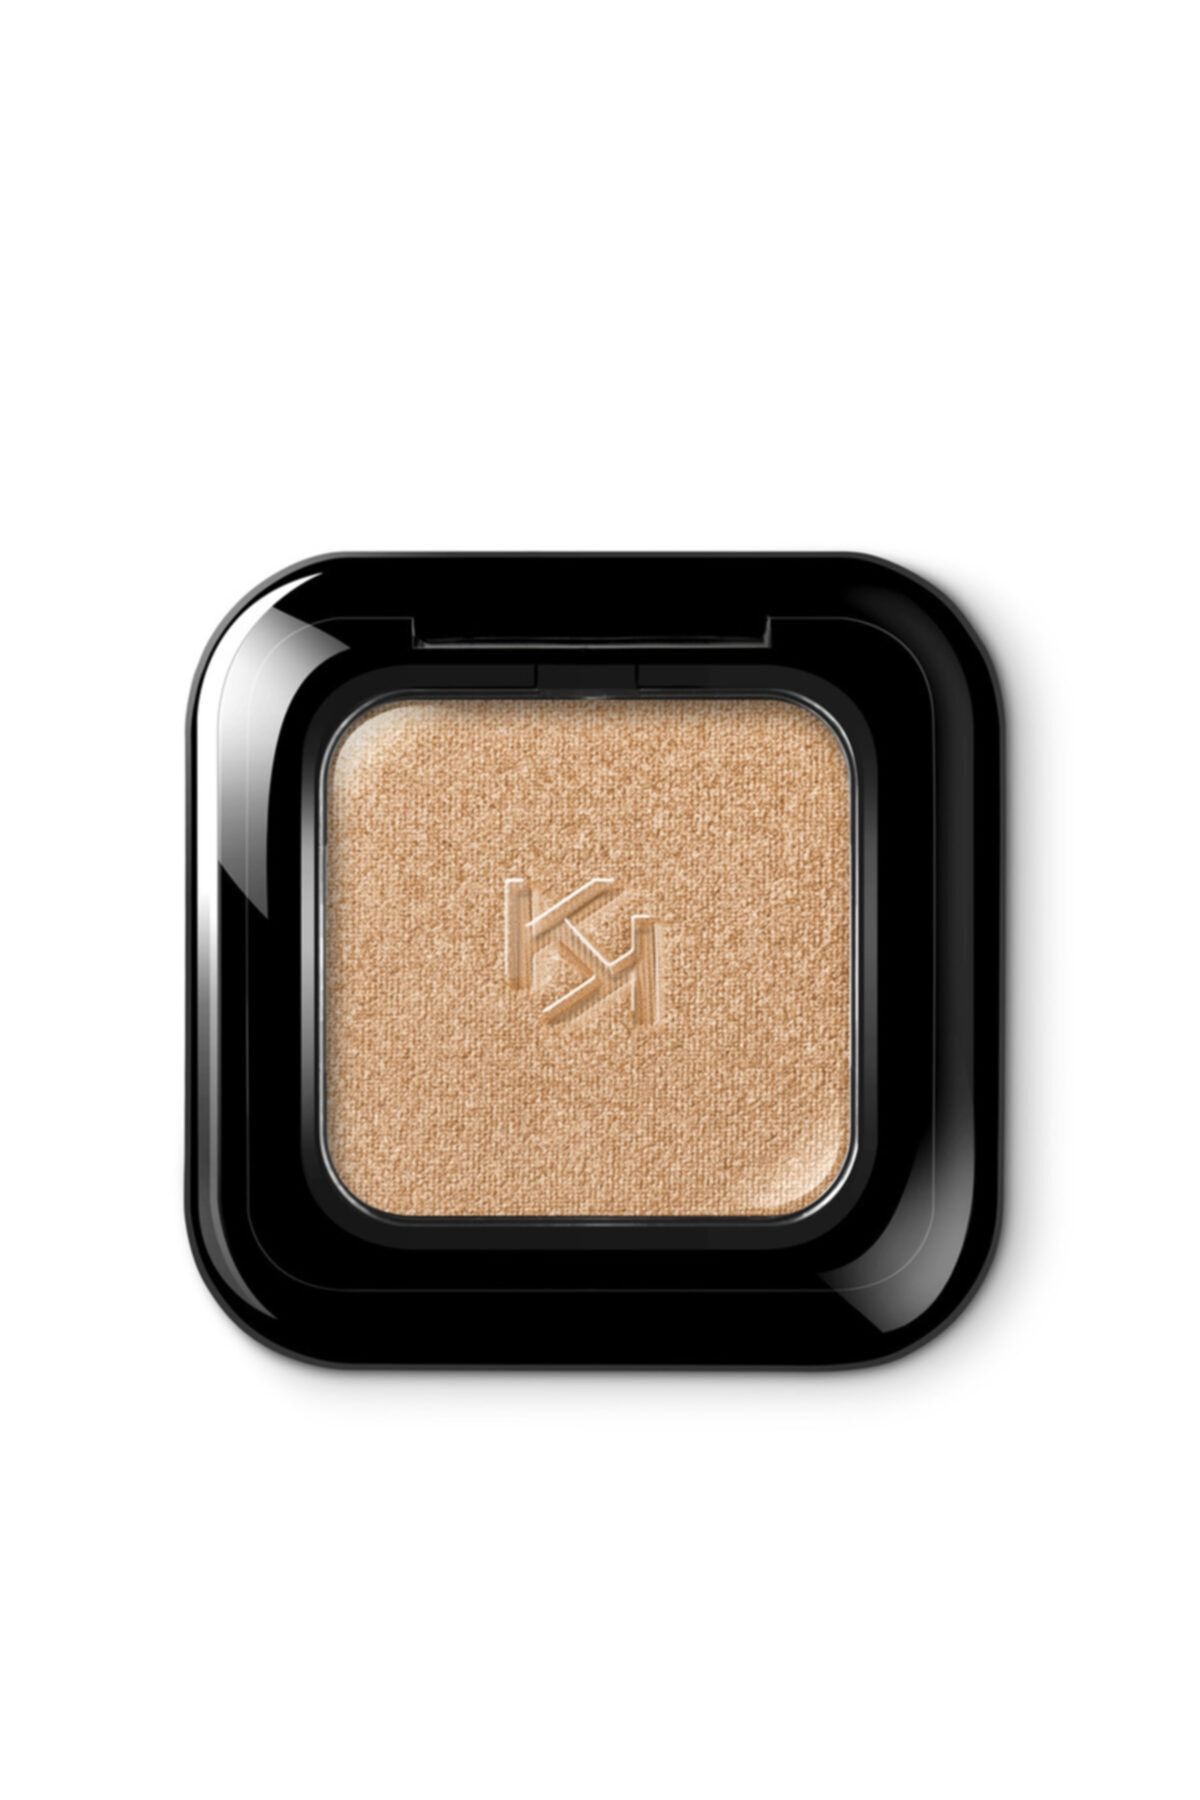 KIKO Göz Farı - High Pigment Eyeshadow 02 Metallic Gold